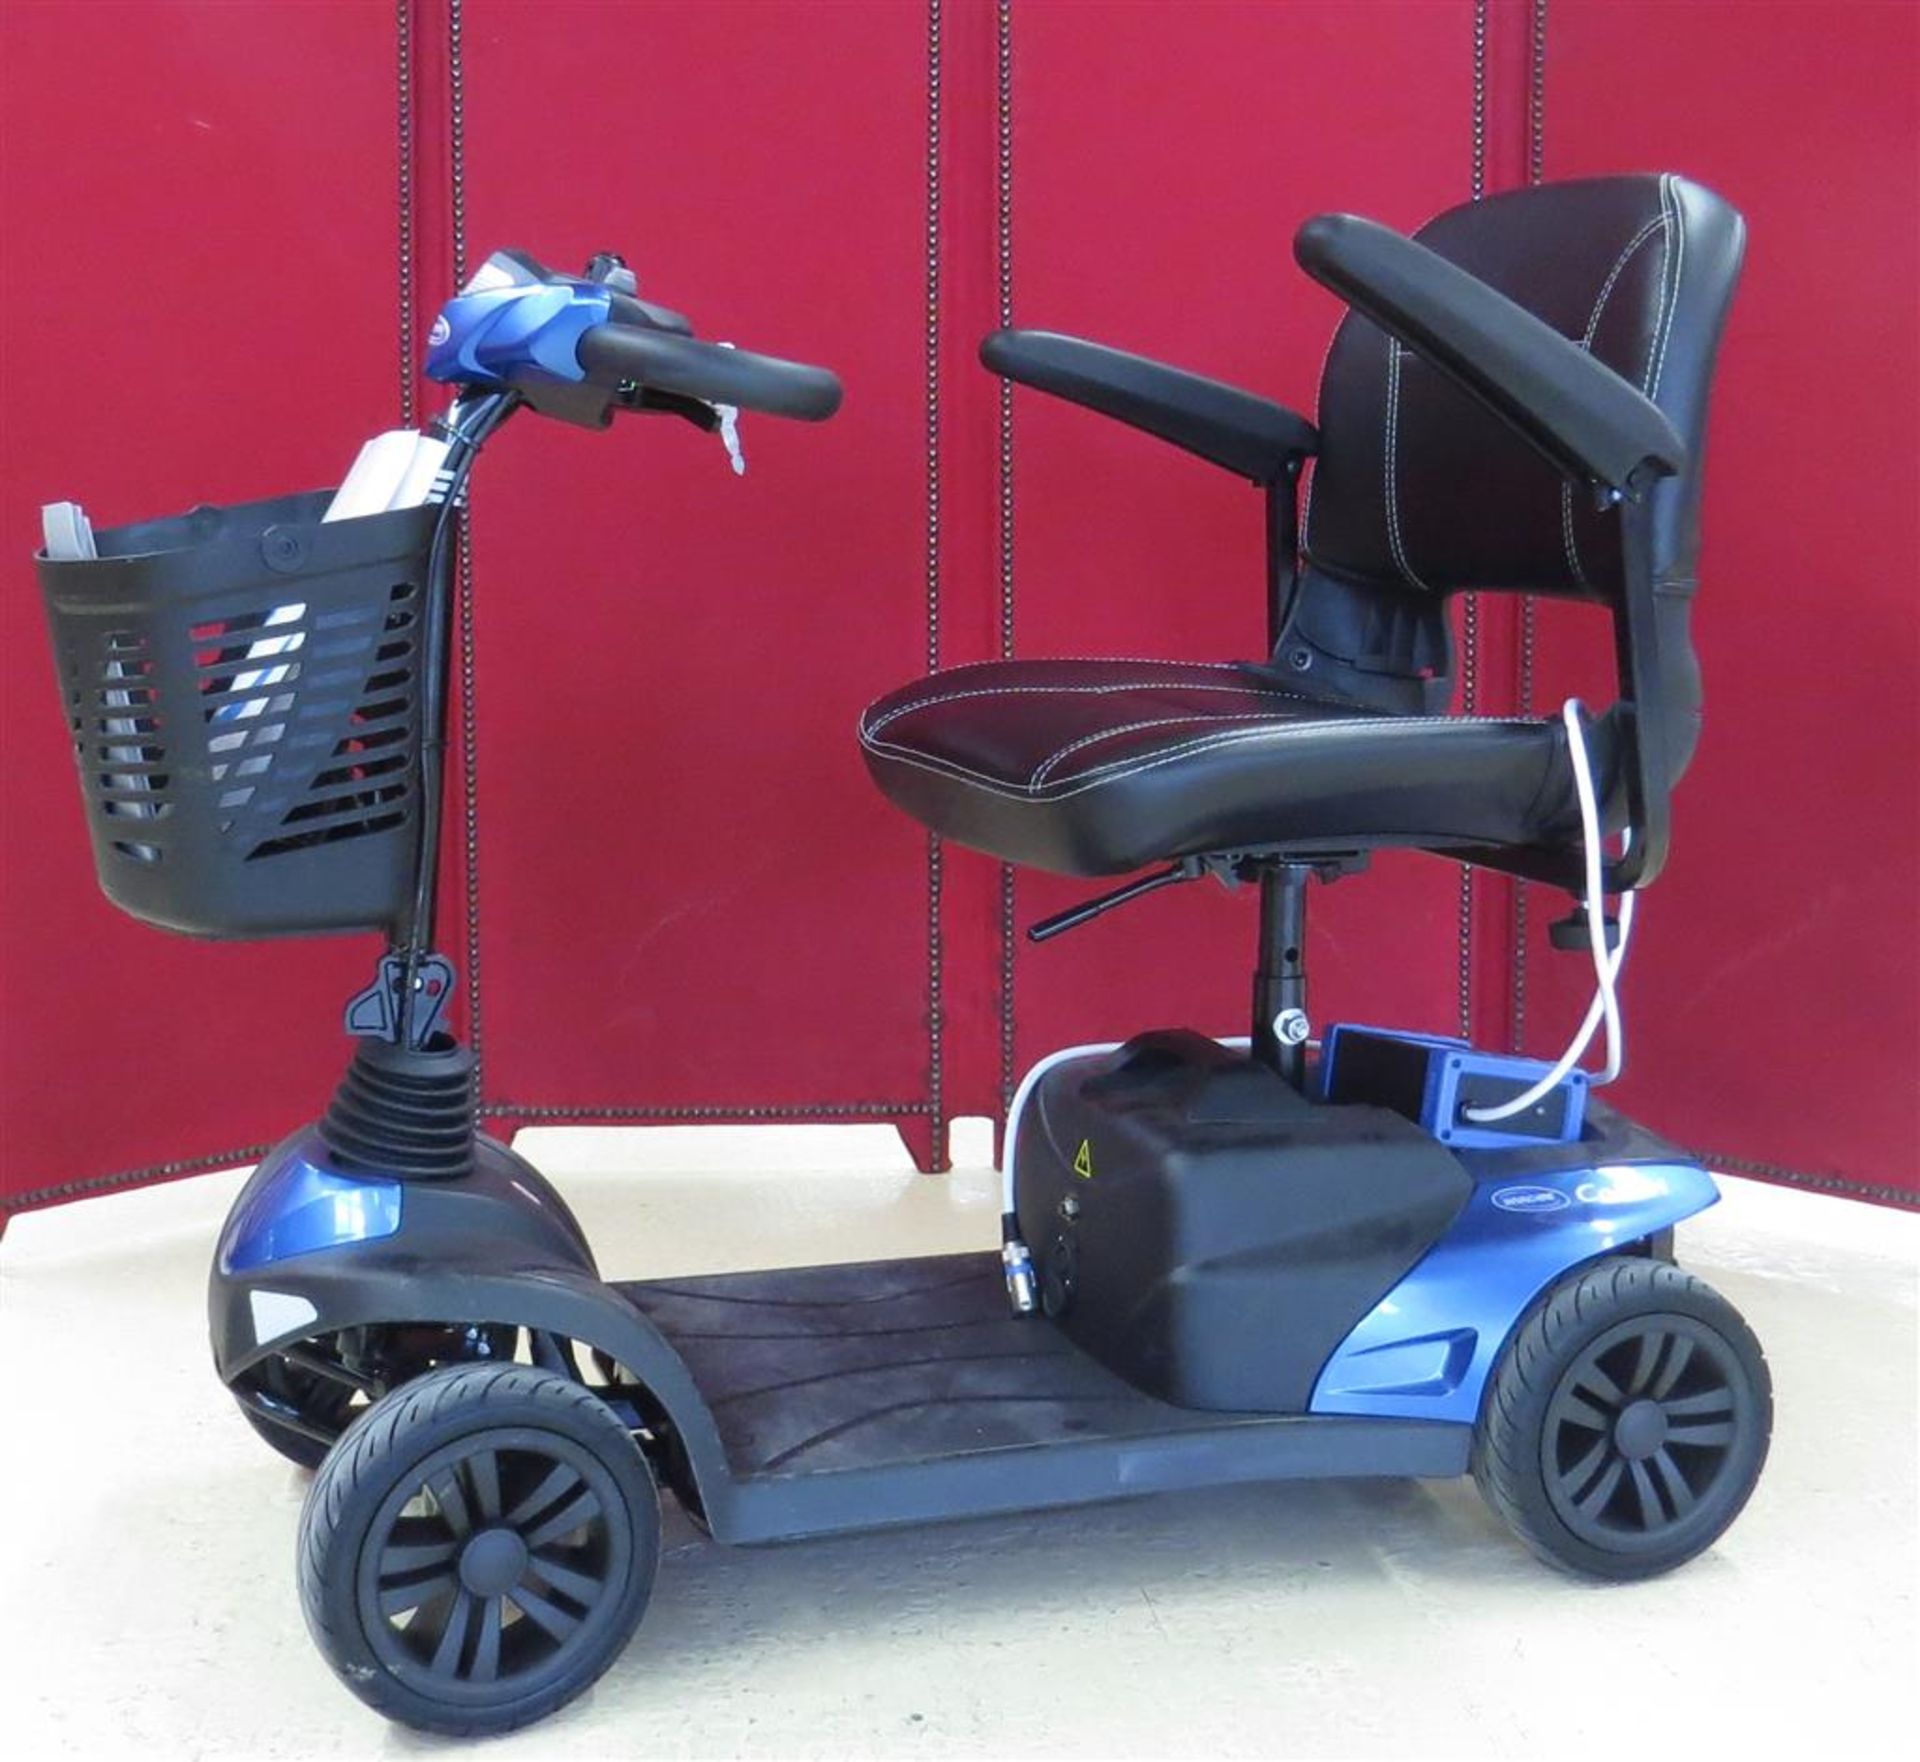 Scooter Colibri 4 roues. Version Outdoor. Coloris bleu électrique 200W. N°série: [...]